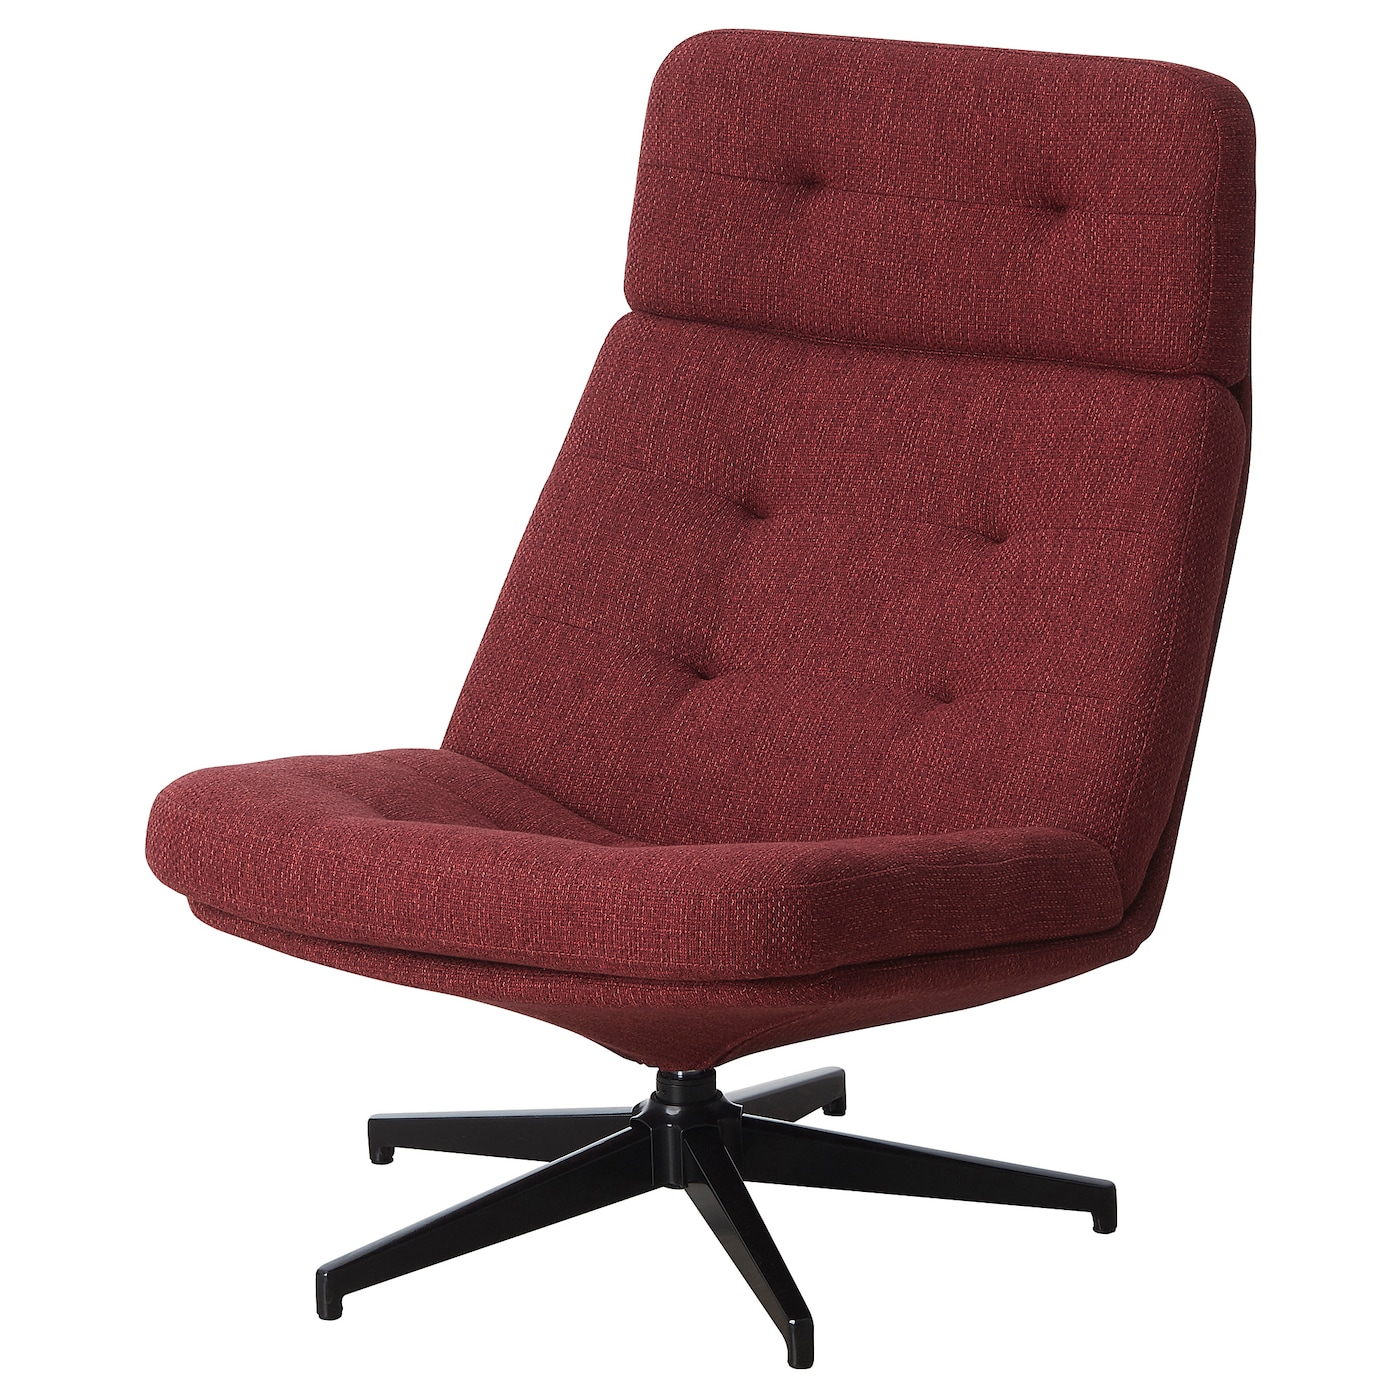 ХАВБЕРГ Вращающееся кресло, Лейде красно-коричневый HAVBERG IKEA стоматологическое кресло седло кресло регулируемое подъемное вращающееся компьютерное кресло эргономичные универсальные детали для оф